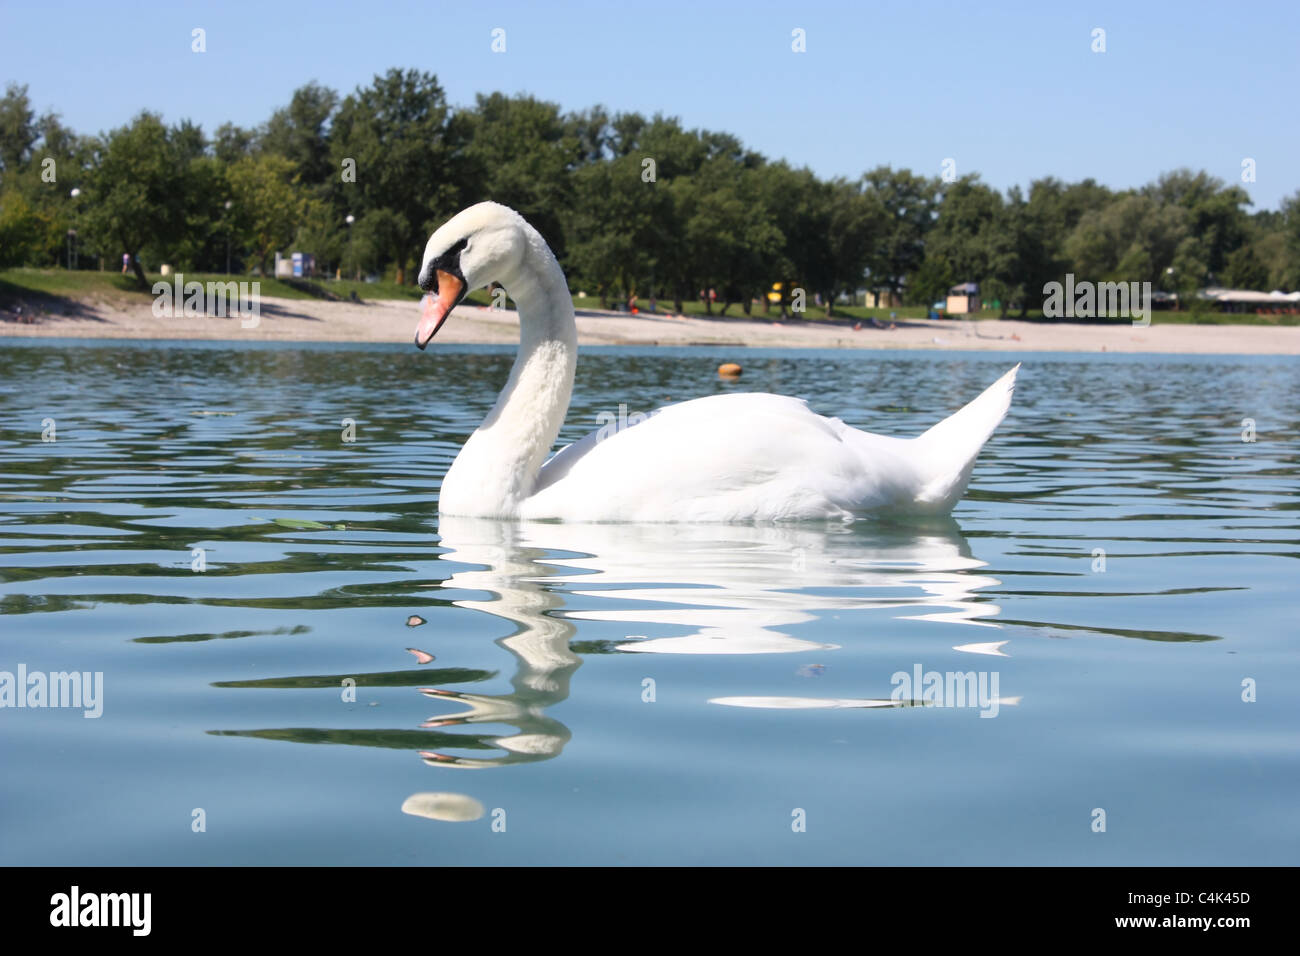 big beautiful swan on the lake Jarun, Zagreb Stock Photo